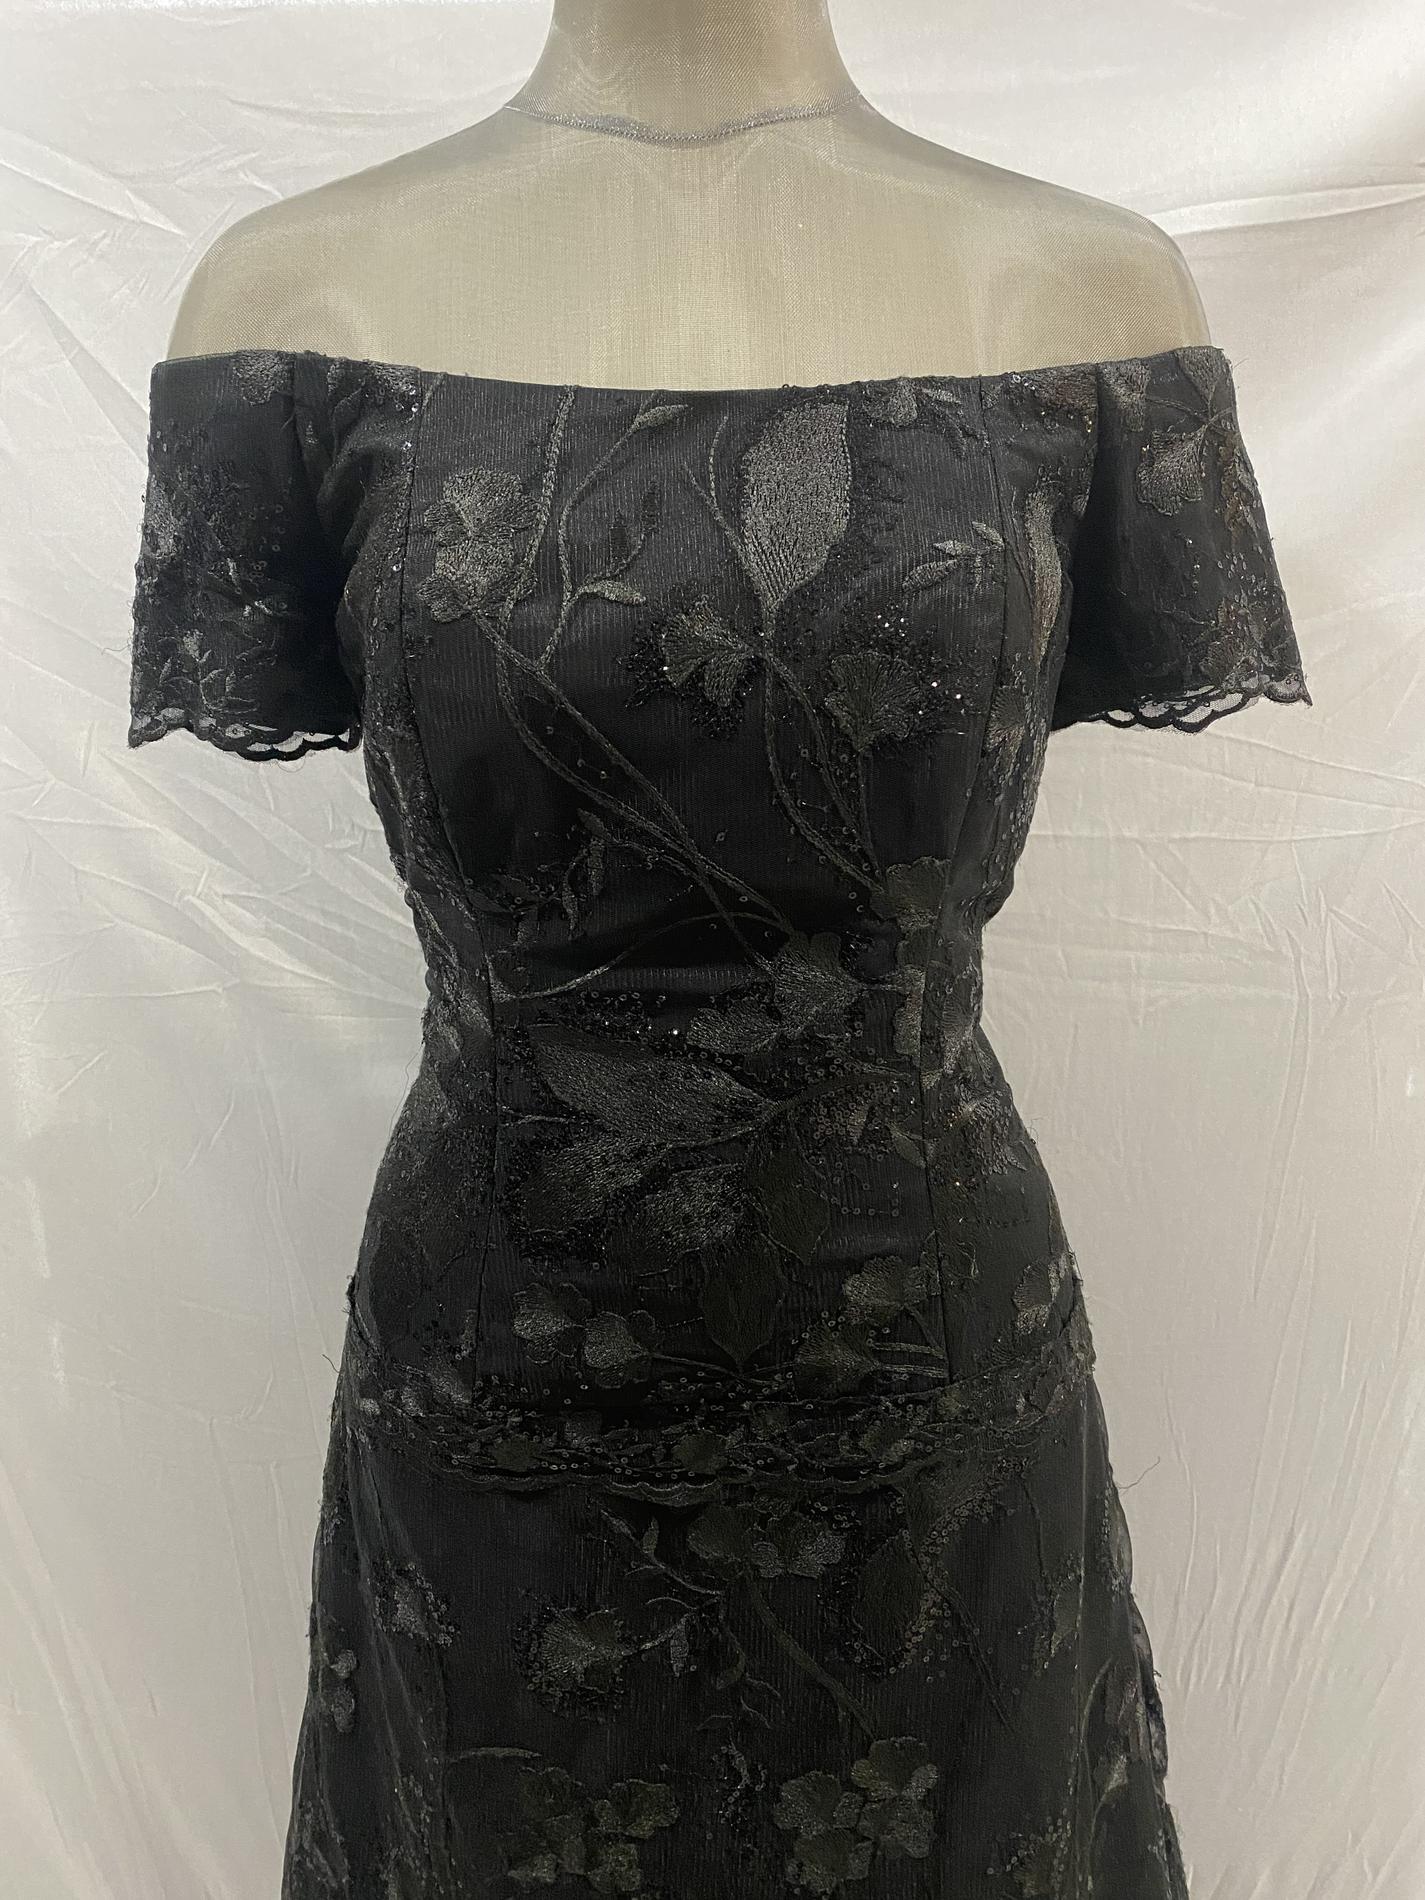 Zola Keller Size 12 Off The Shoulder Black A-line Dress on Queenly